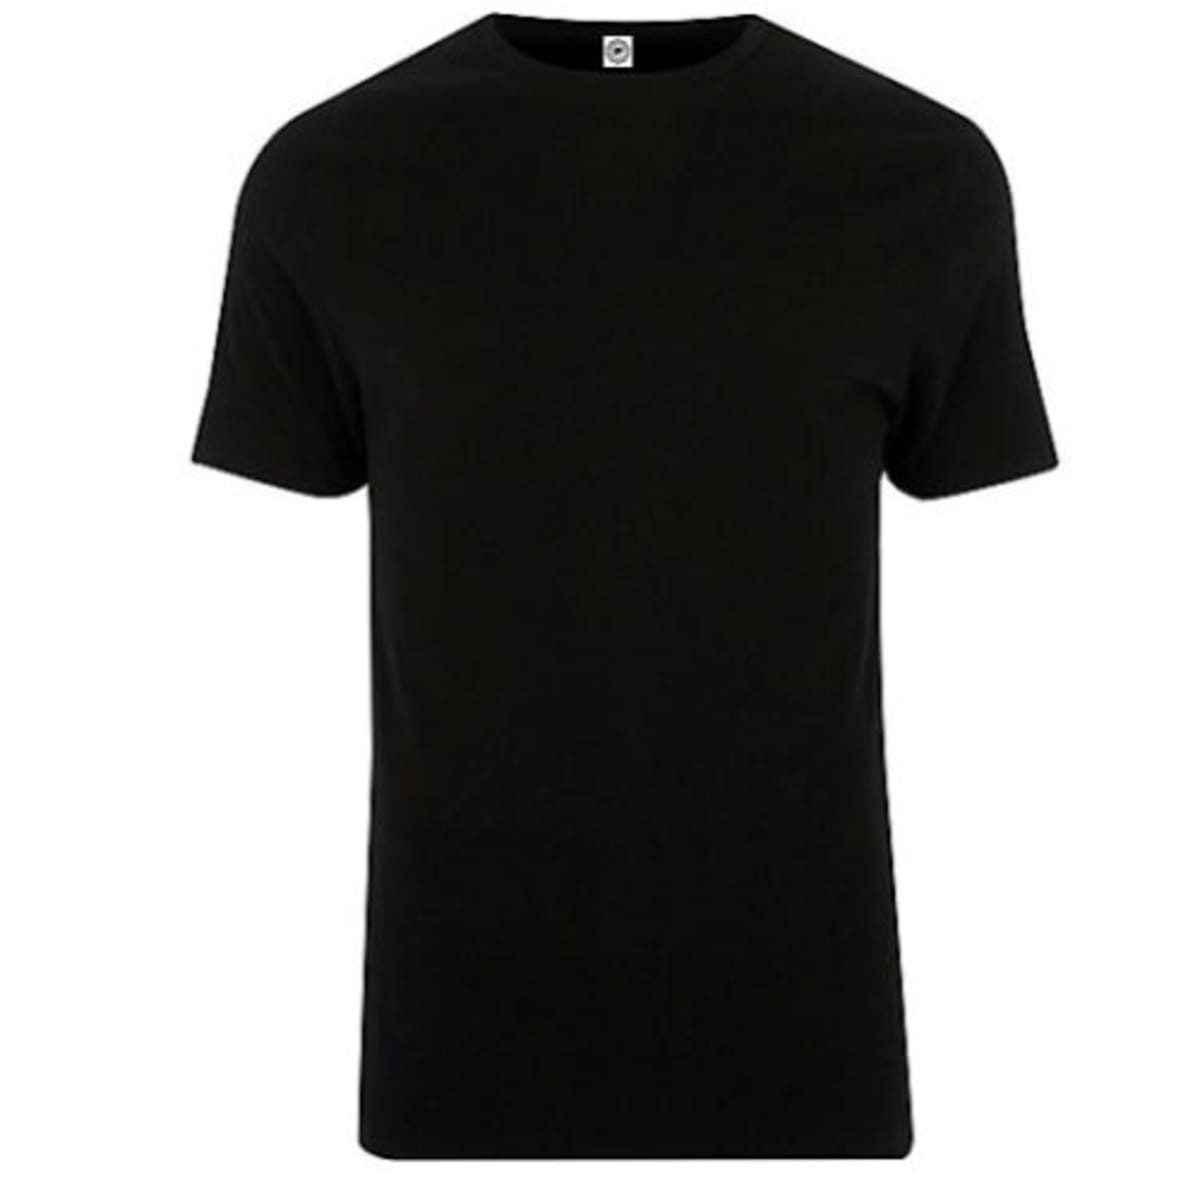 Men's Plain T-shirt - Black | Konga Shopping